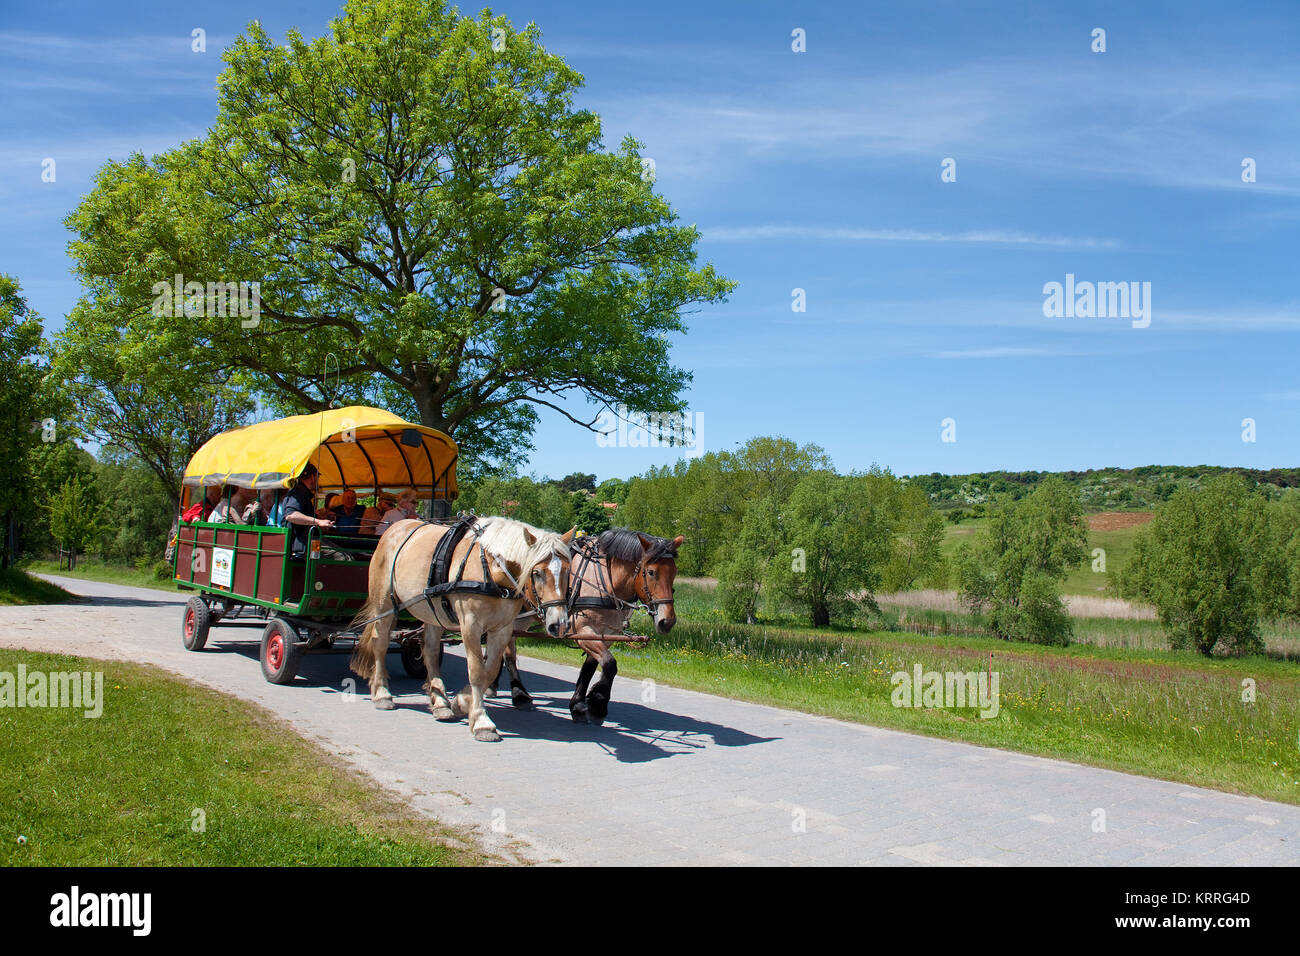 Pferdekutsche auf dem Weg von Dorf zu Dorf und Kloster, Insel Hiddensee, Mecklenburg-Vorpommern, Ostsee, Deutschland Stockfoto